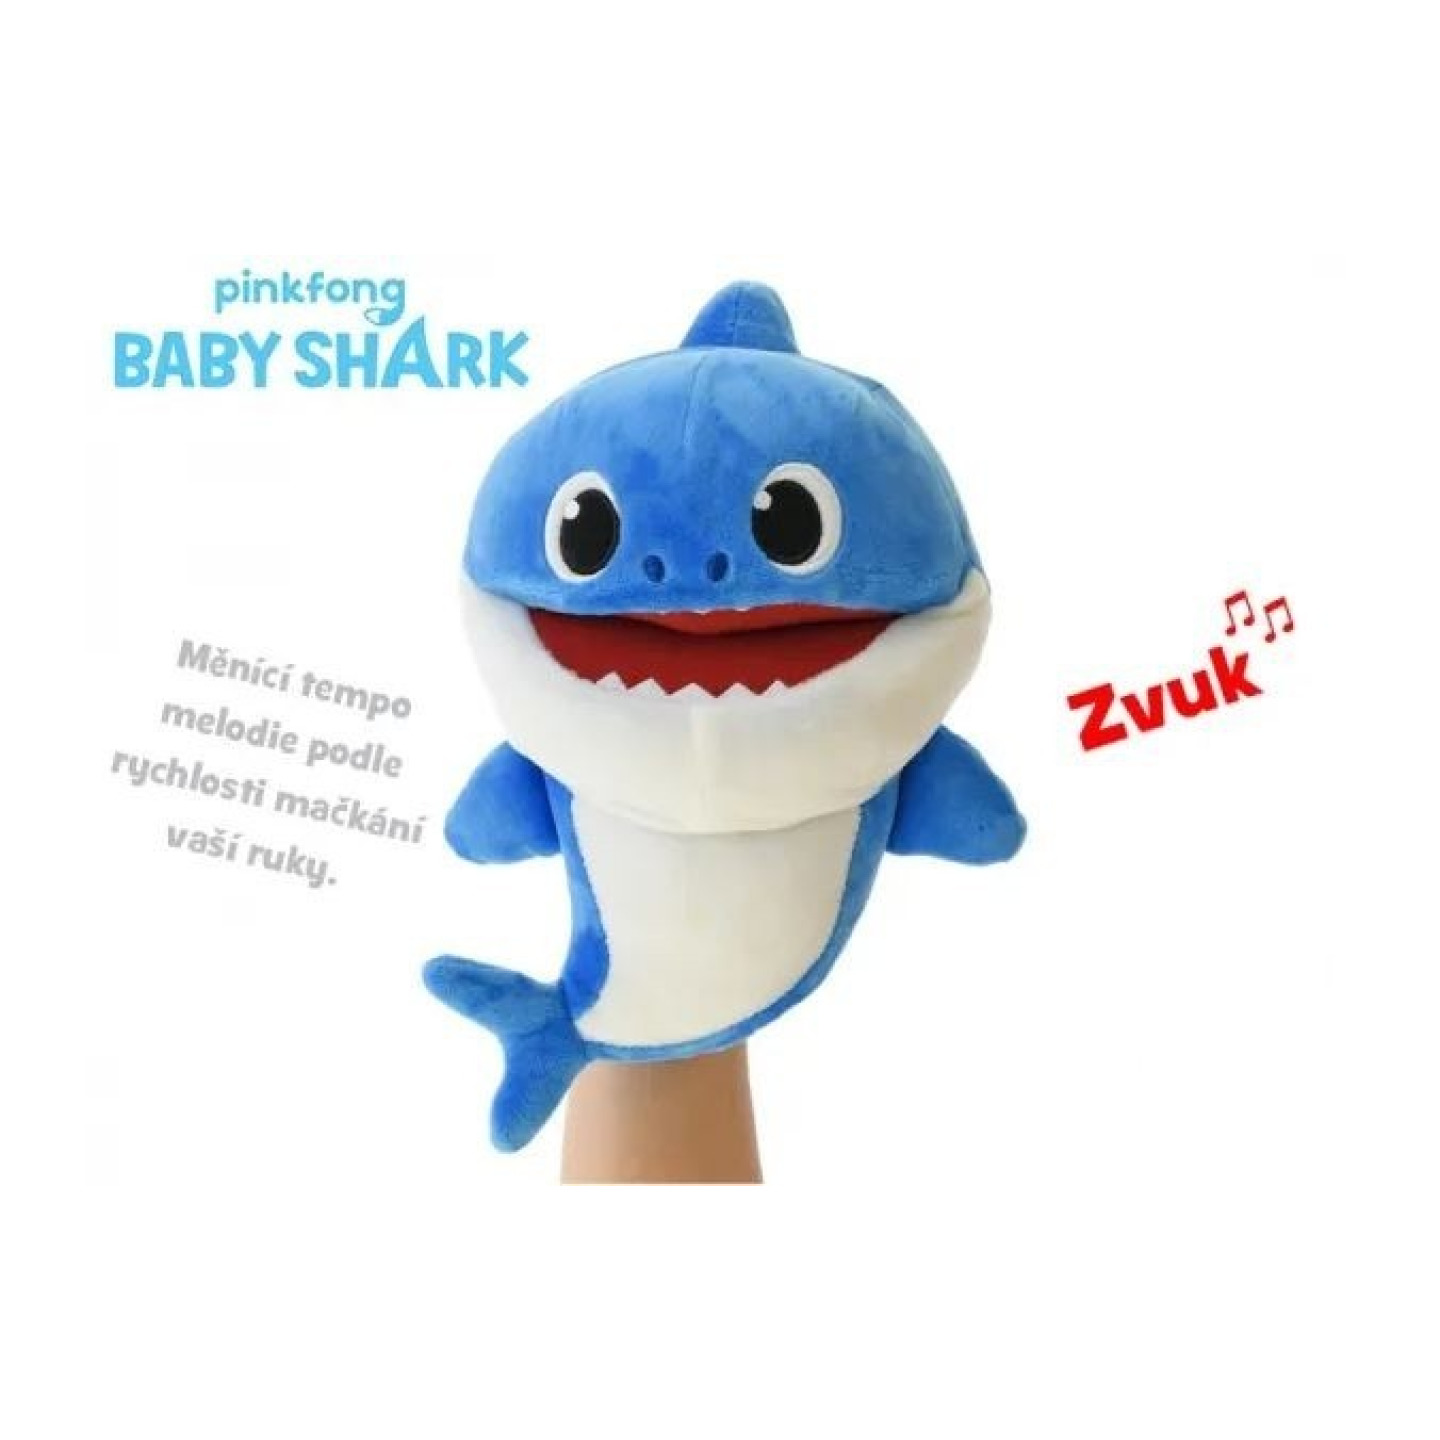 BABY SHARK Plyšový maňásek žralok zpívající 23cm modrý